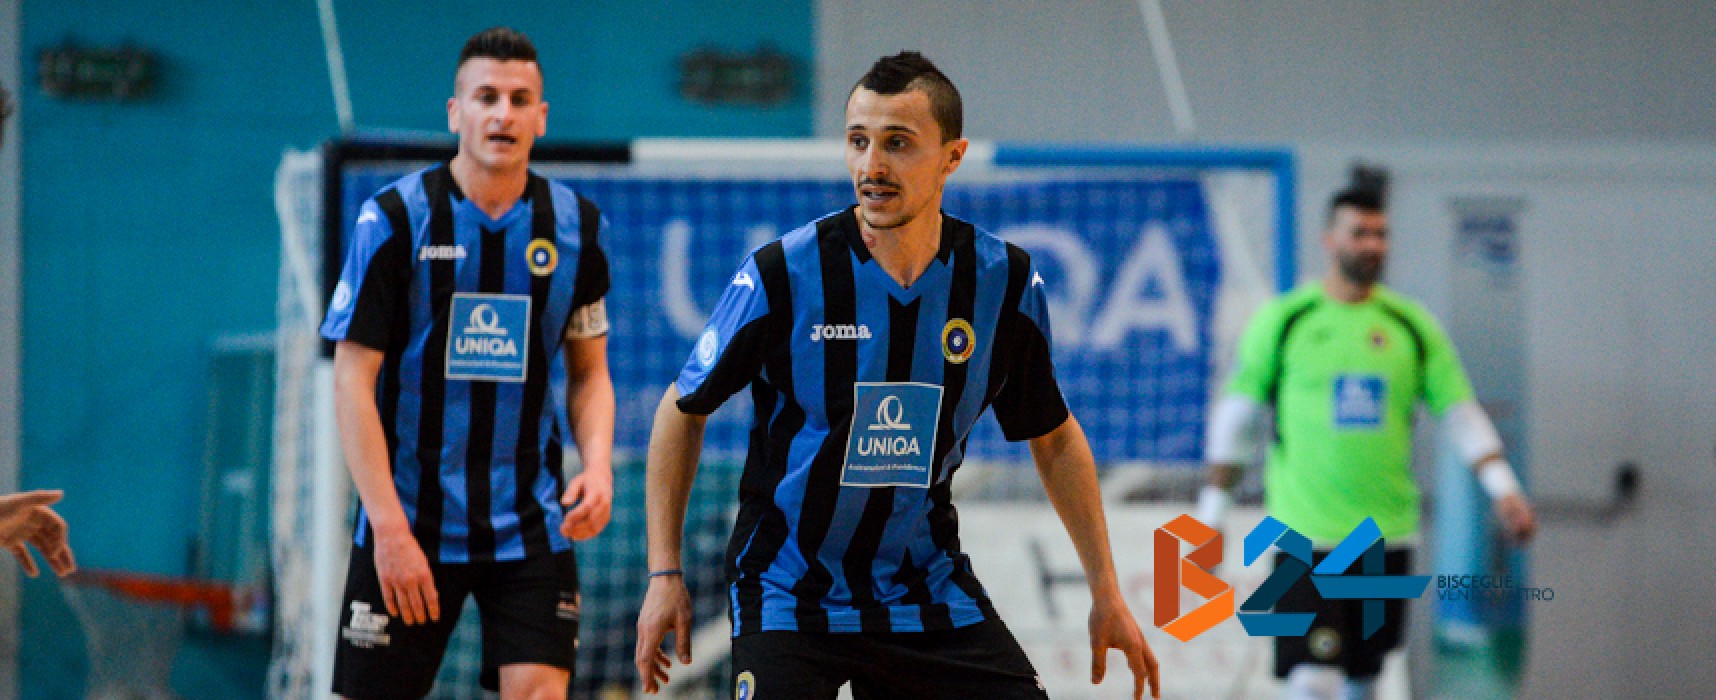 Di Benedetto e Futsal Bisceglie insieme per i prossimi tre anni